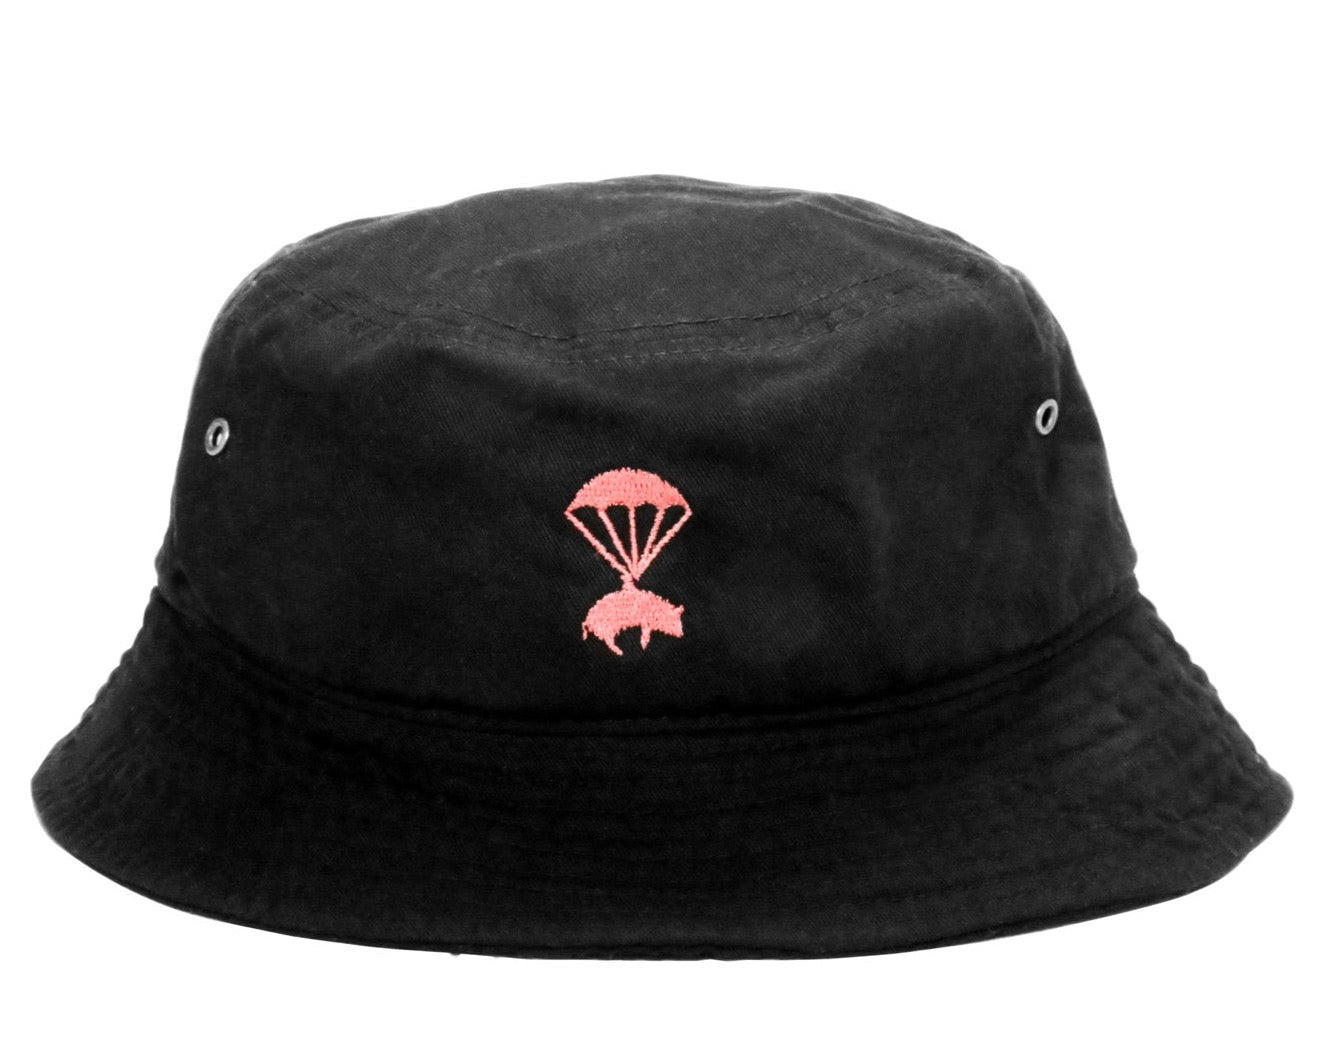 OG PIG Bucket Hat - Black/Pink